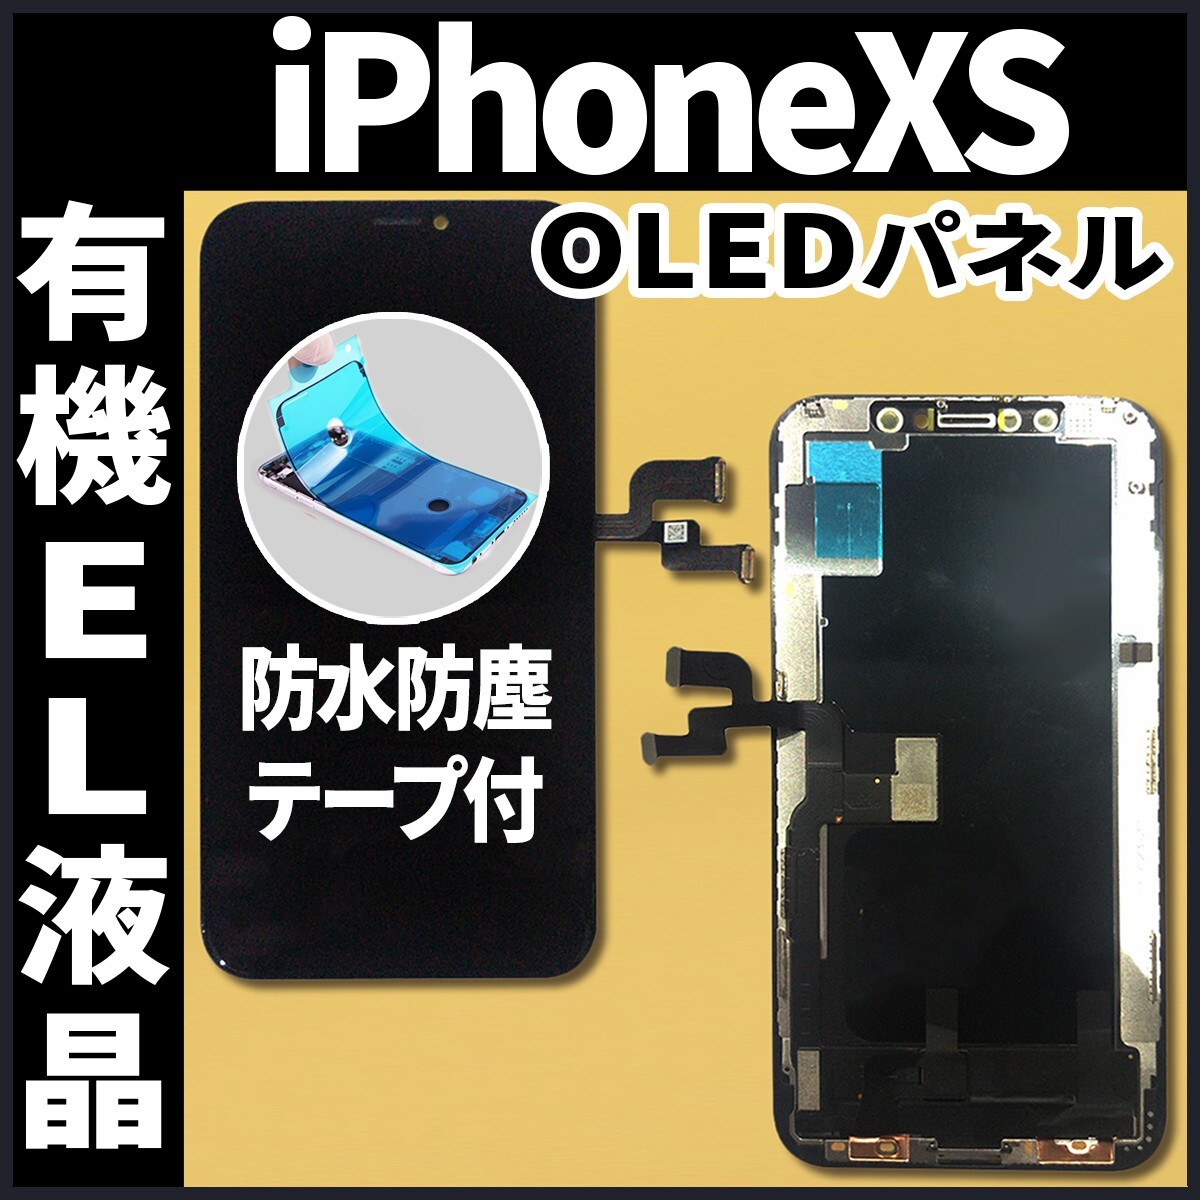 フロントパネル iPhoneXS 有機EL液晶 OLED 防水テープ 工具無 互換 ガラス割れ 画面割れ 業者 修理 iphone ディスプレイ 純正同等.の画像1